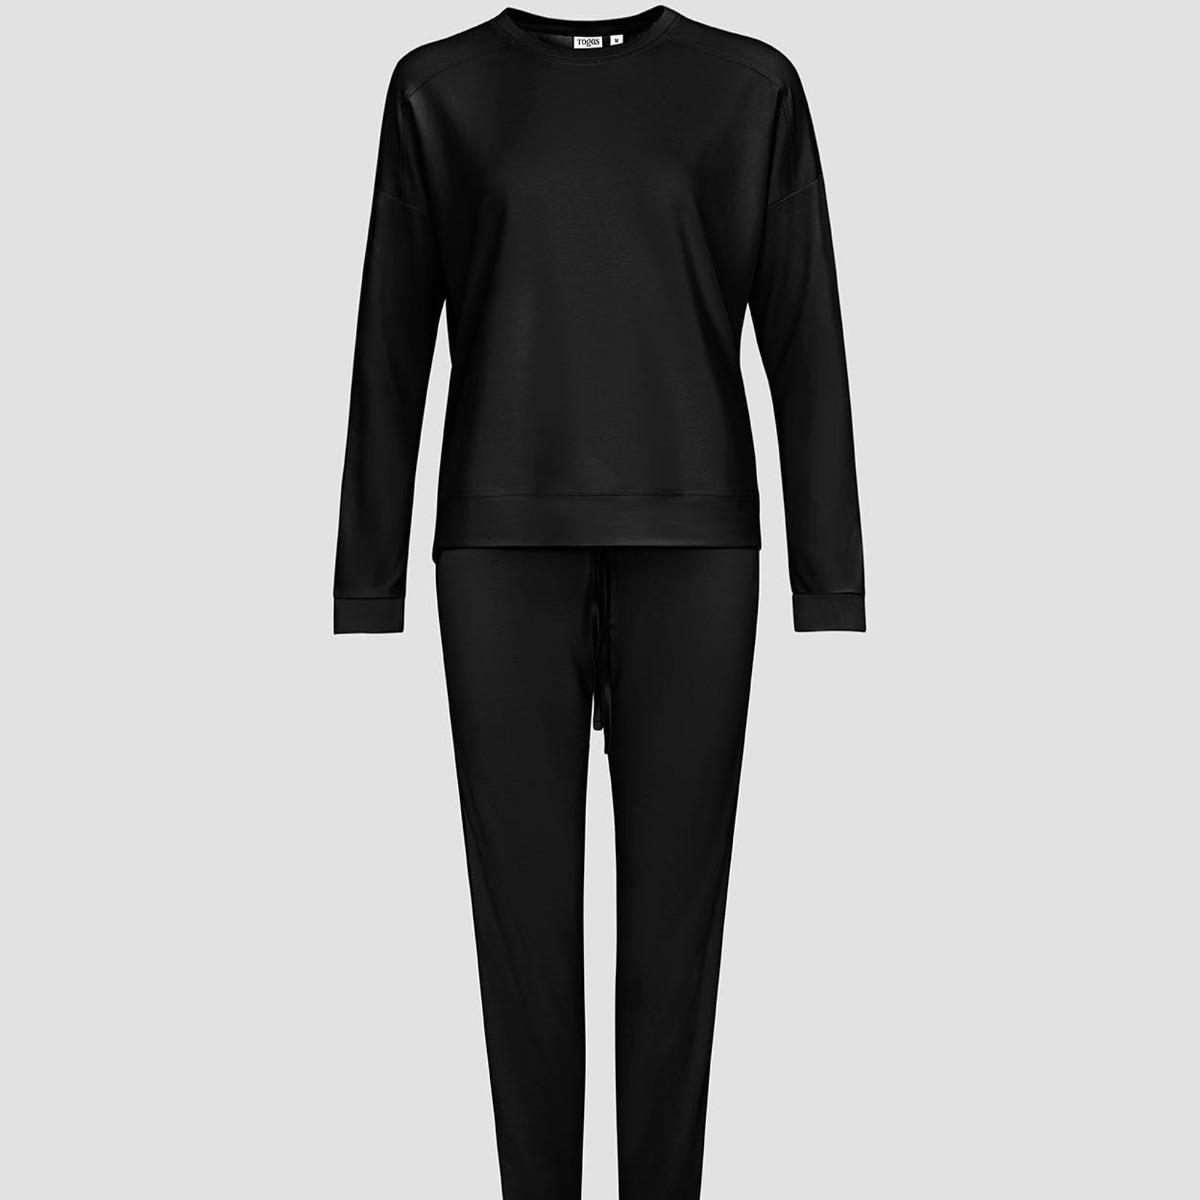 Женская пижама Togas Рене чёрная XS (42)